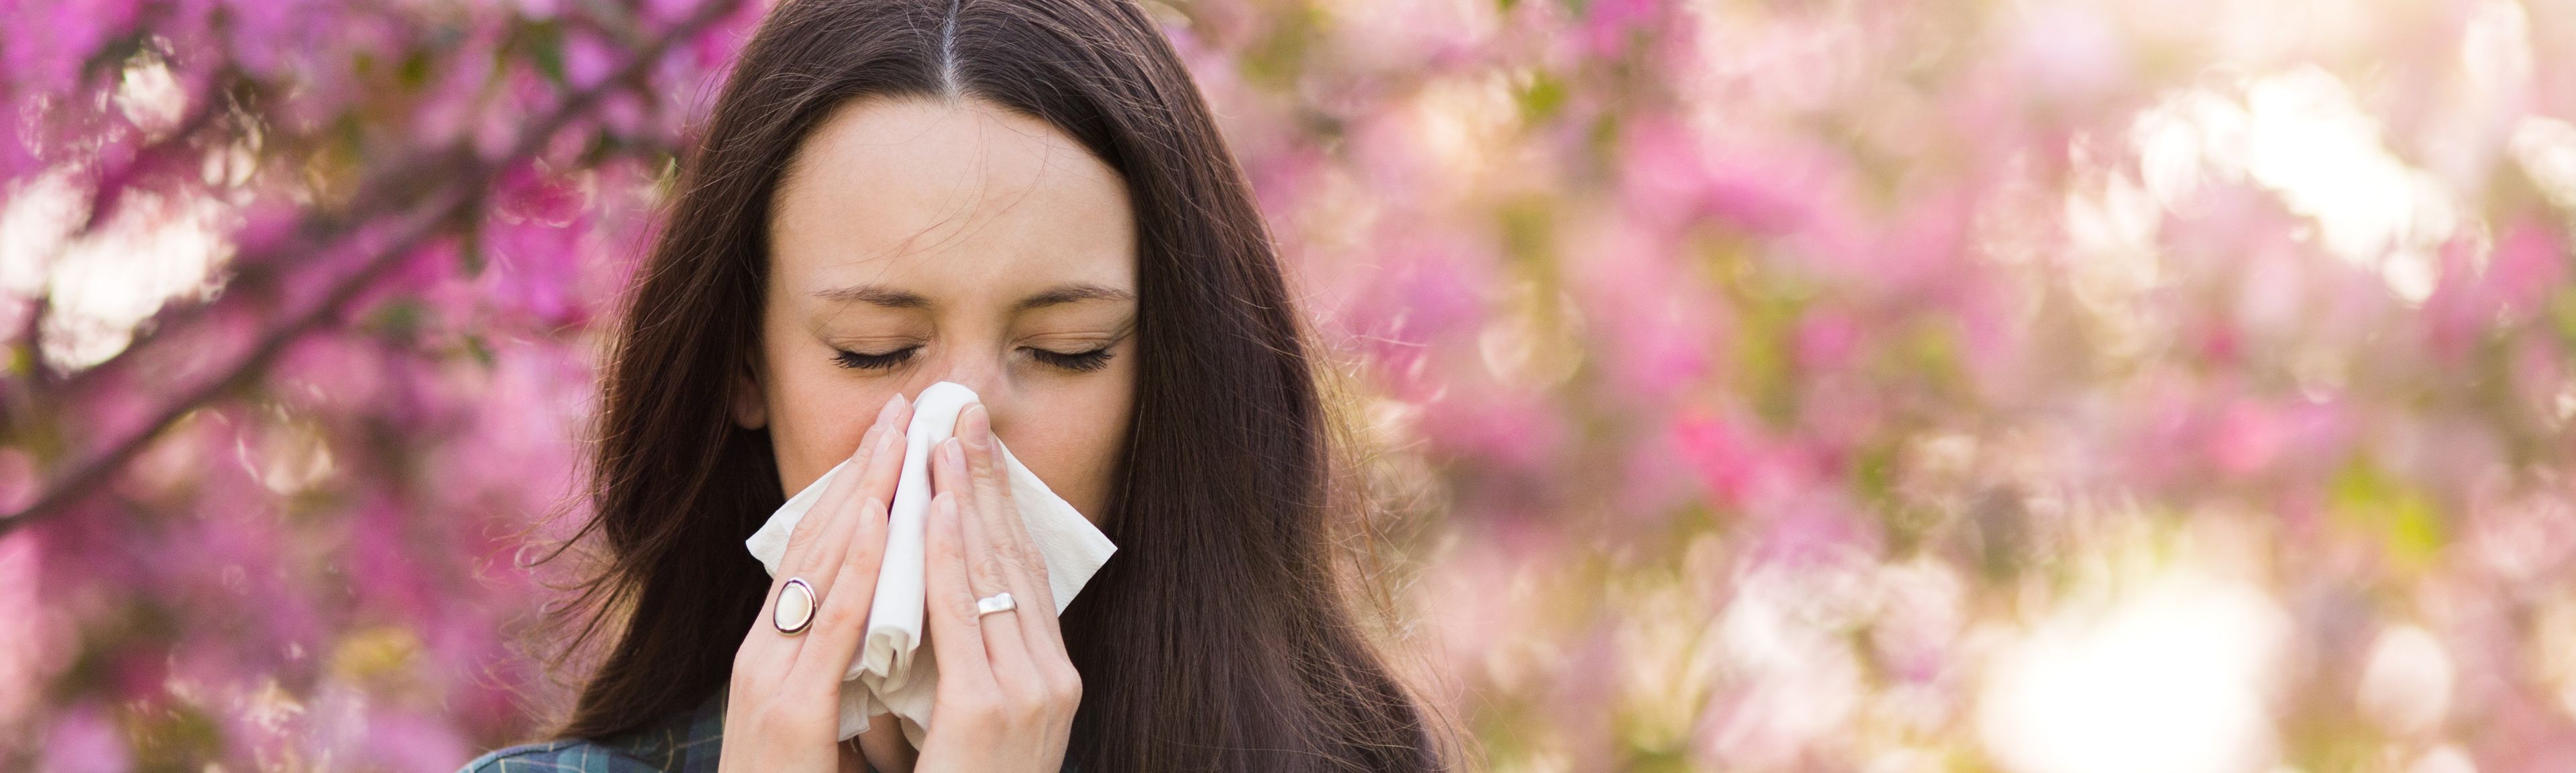 Eine Frau wird von Ihrer Pollenallergie geplagt